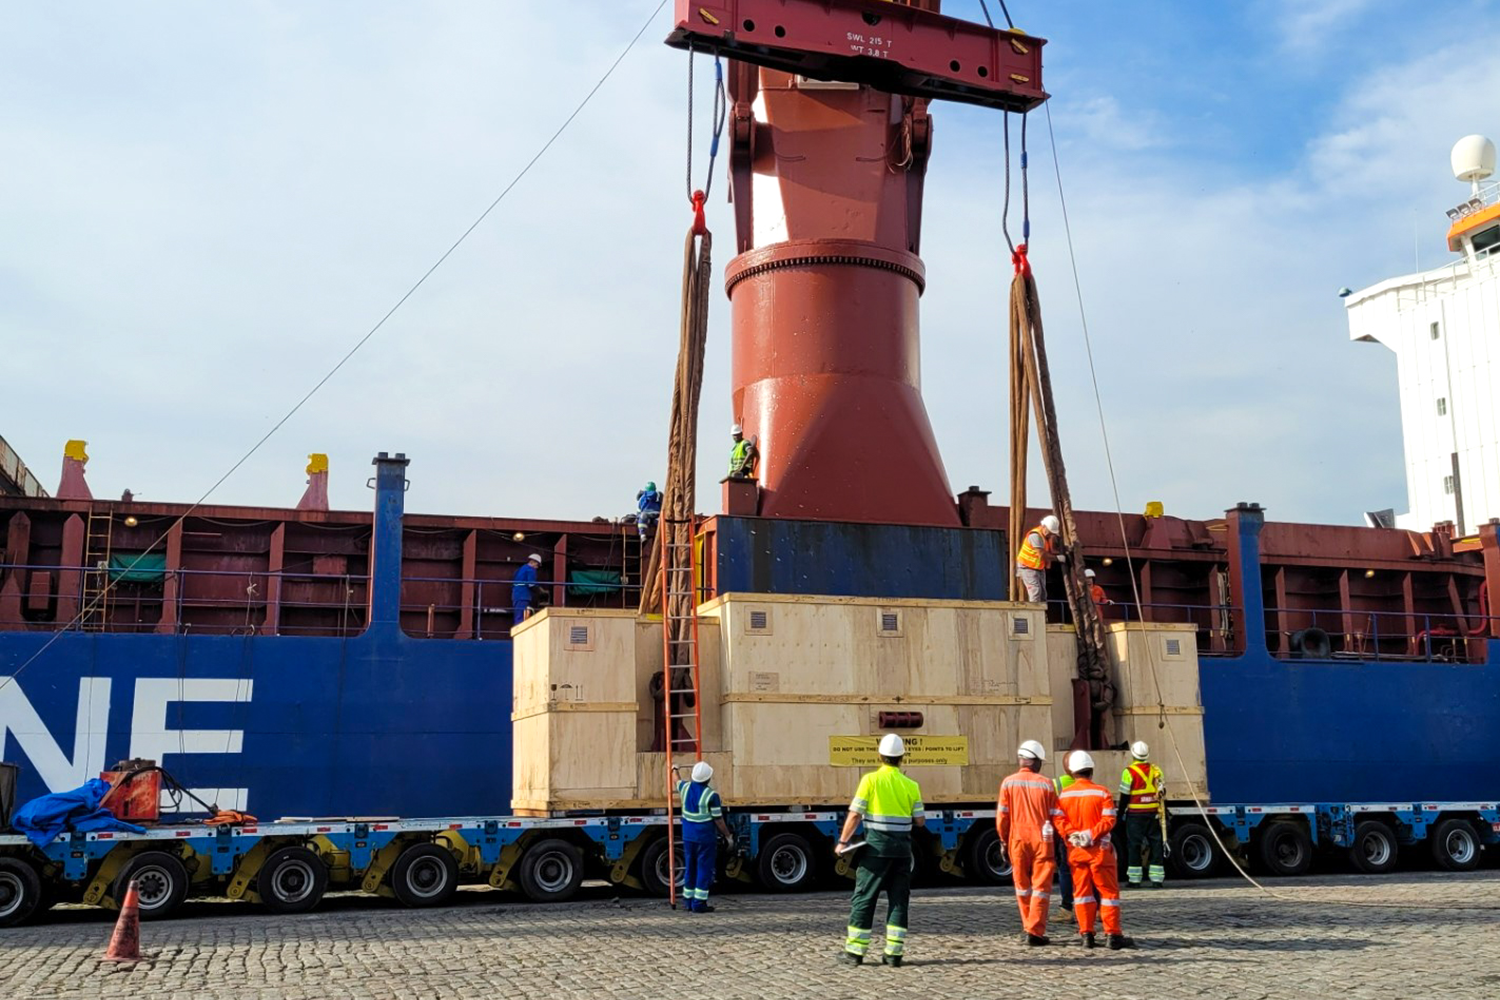 Trabalhadores do porto em pé ao redor de uma carga gigante que está sendo segurada por um guindaste